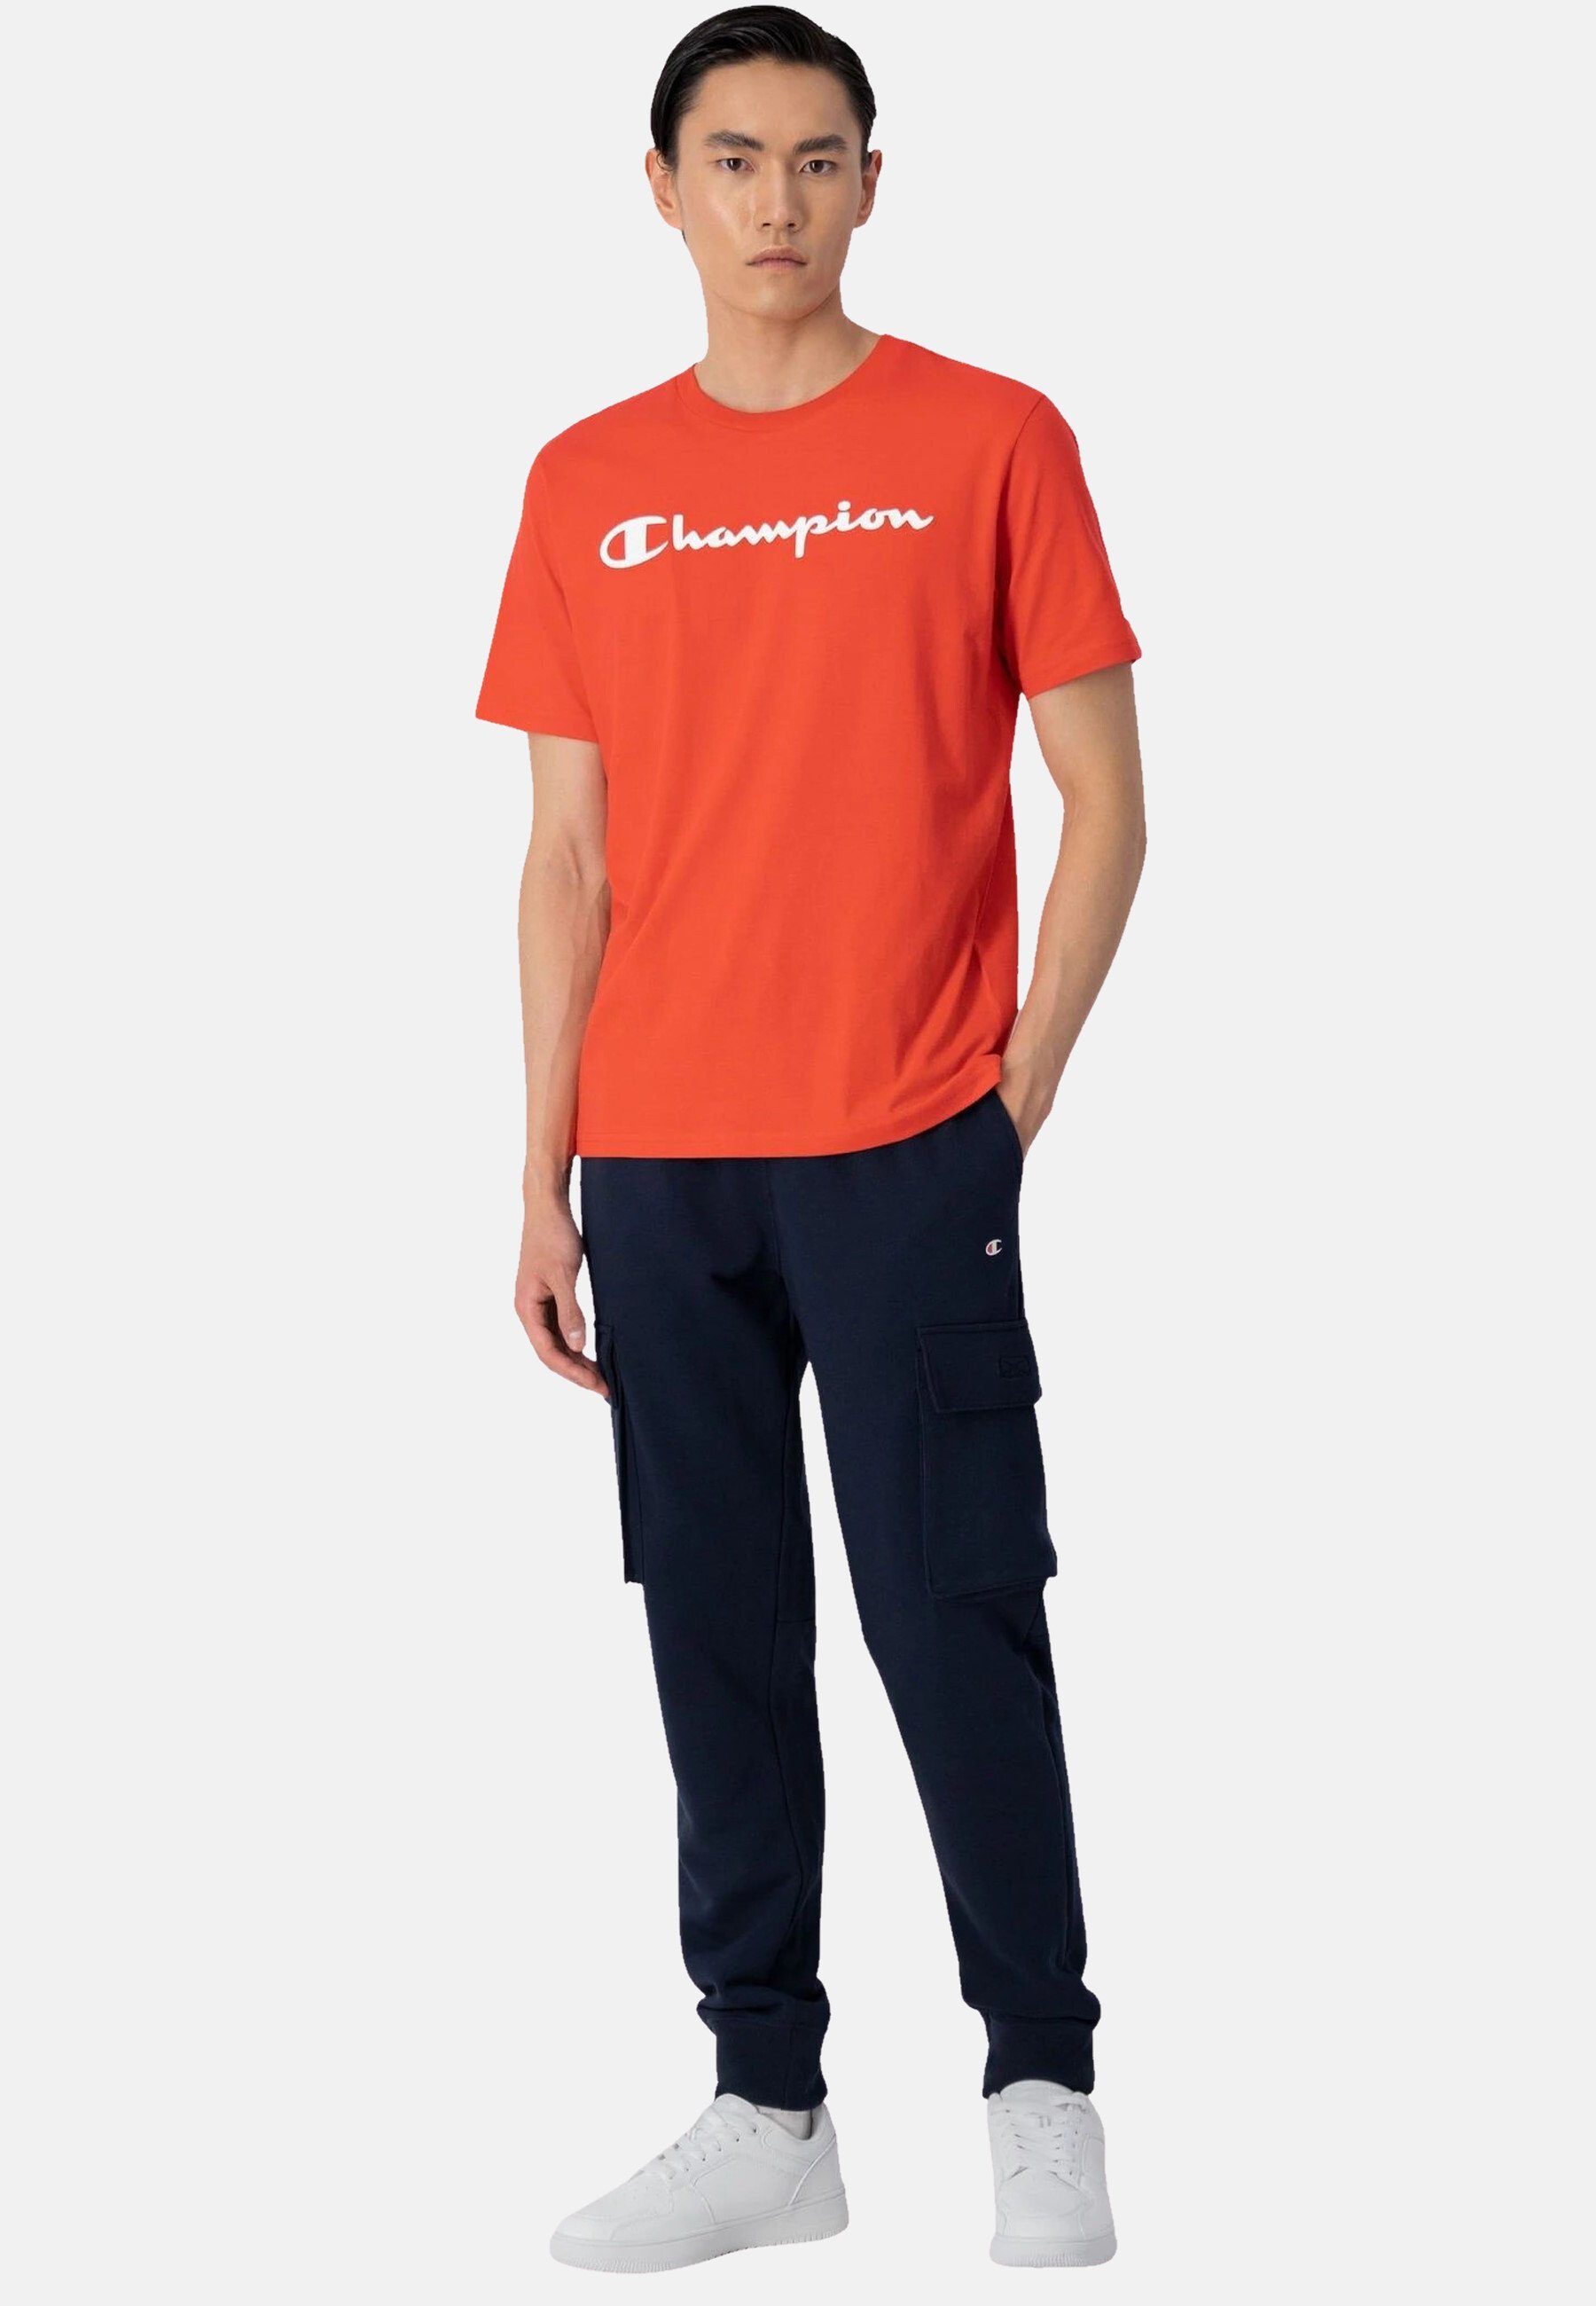 Champion T-Shirt Shirt Baumwolle rot aus mit Rundhals-T-Shirt